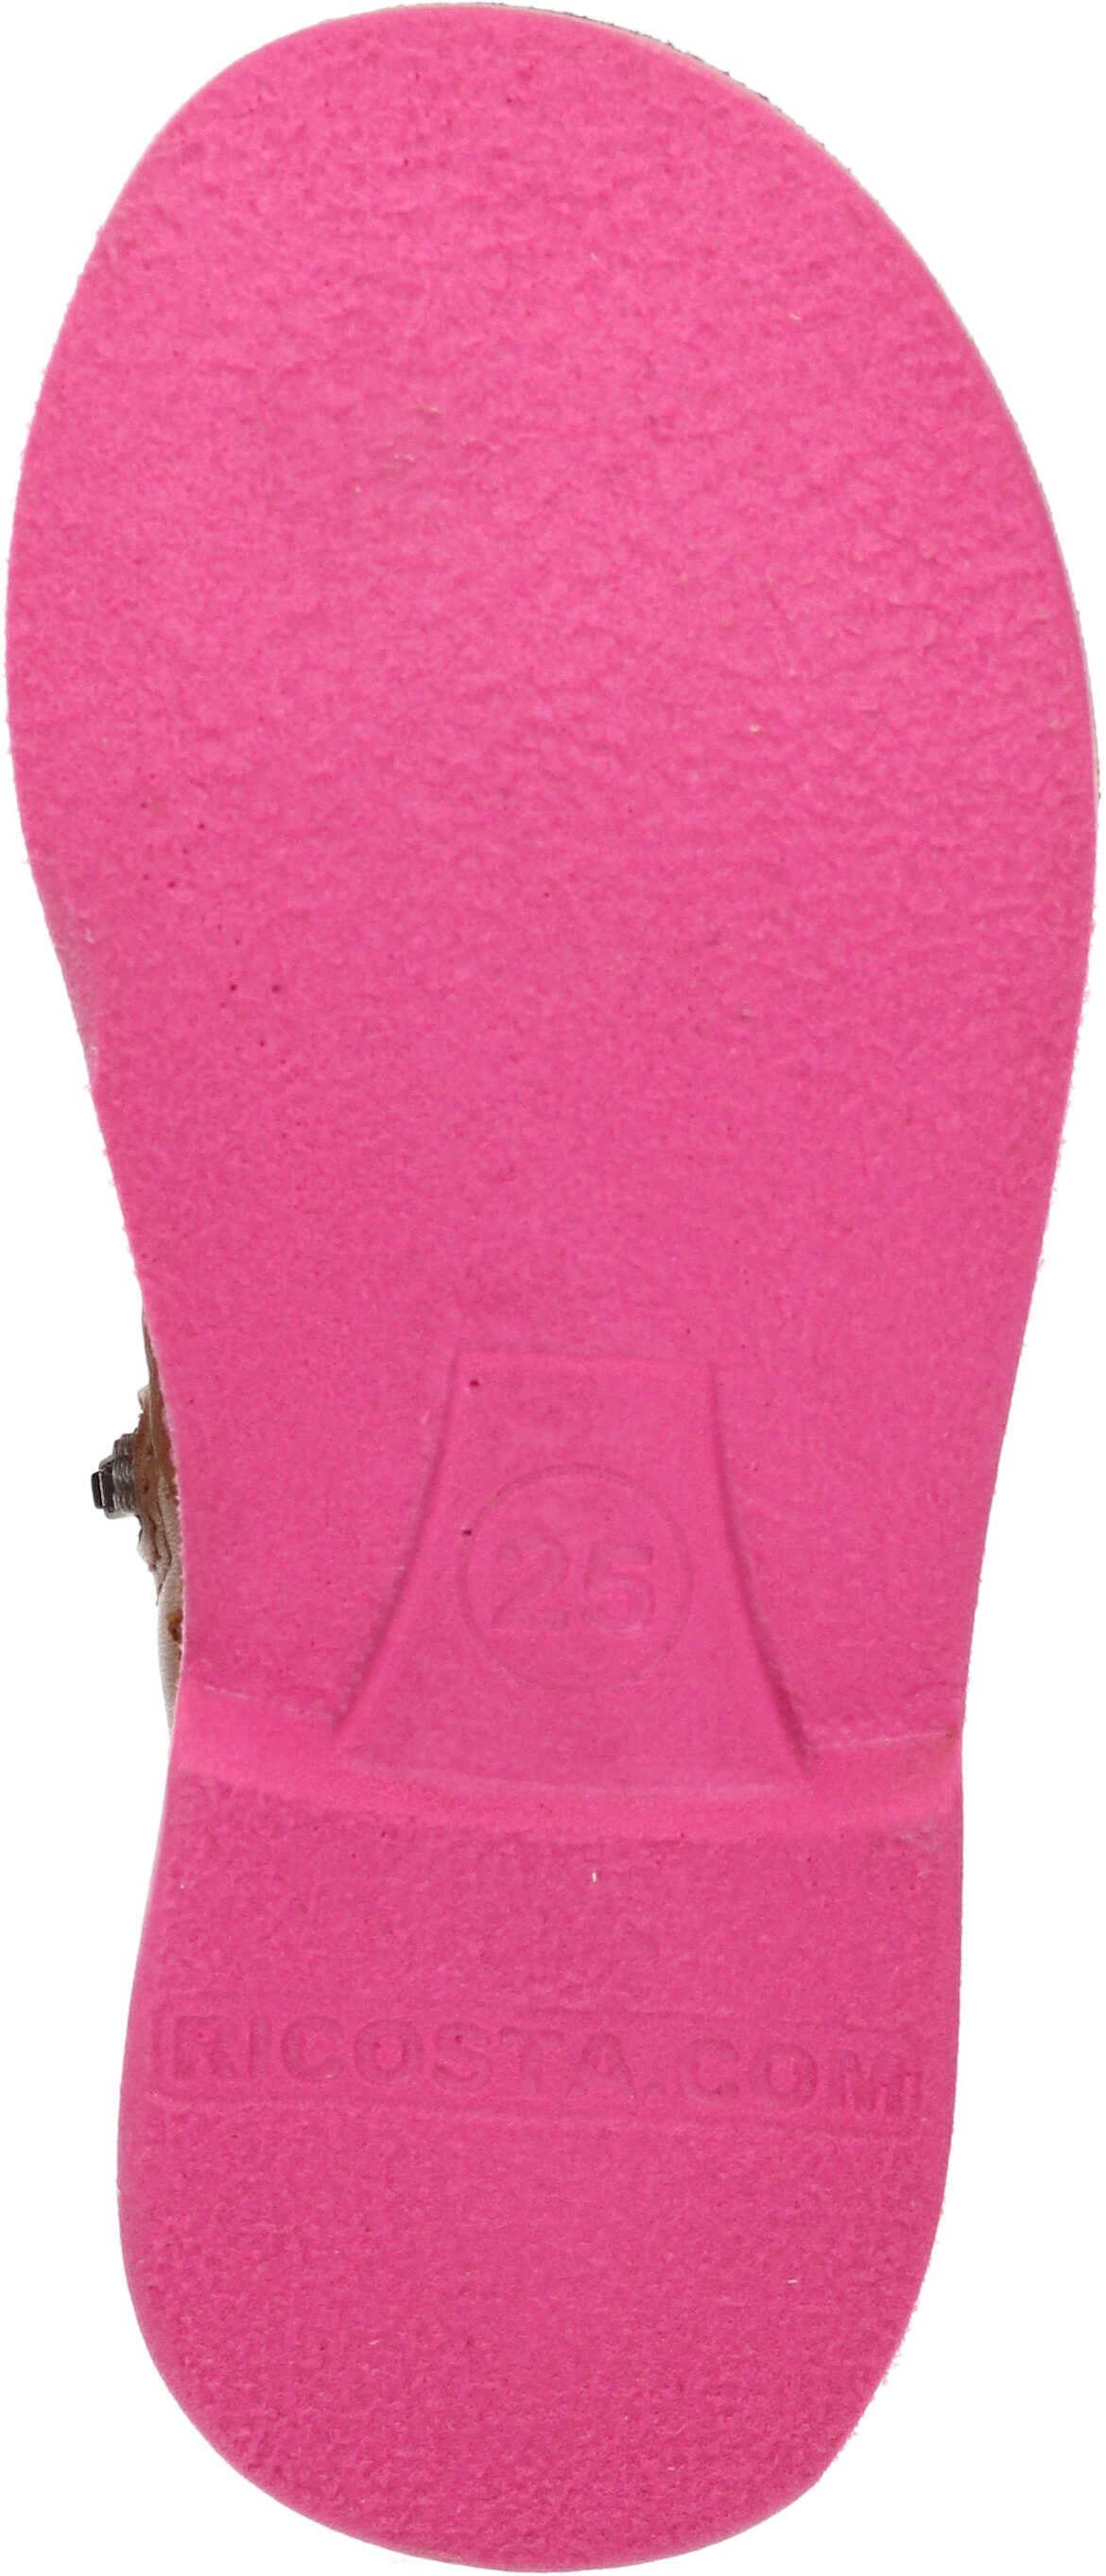 (270) Stiefeletten cognac/pink Leder Stiefel echtem Ricosta aus